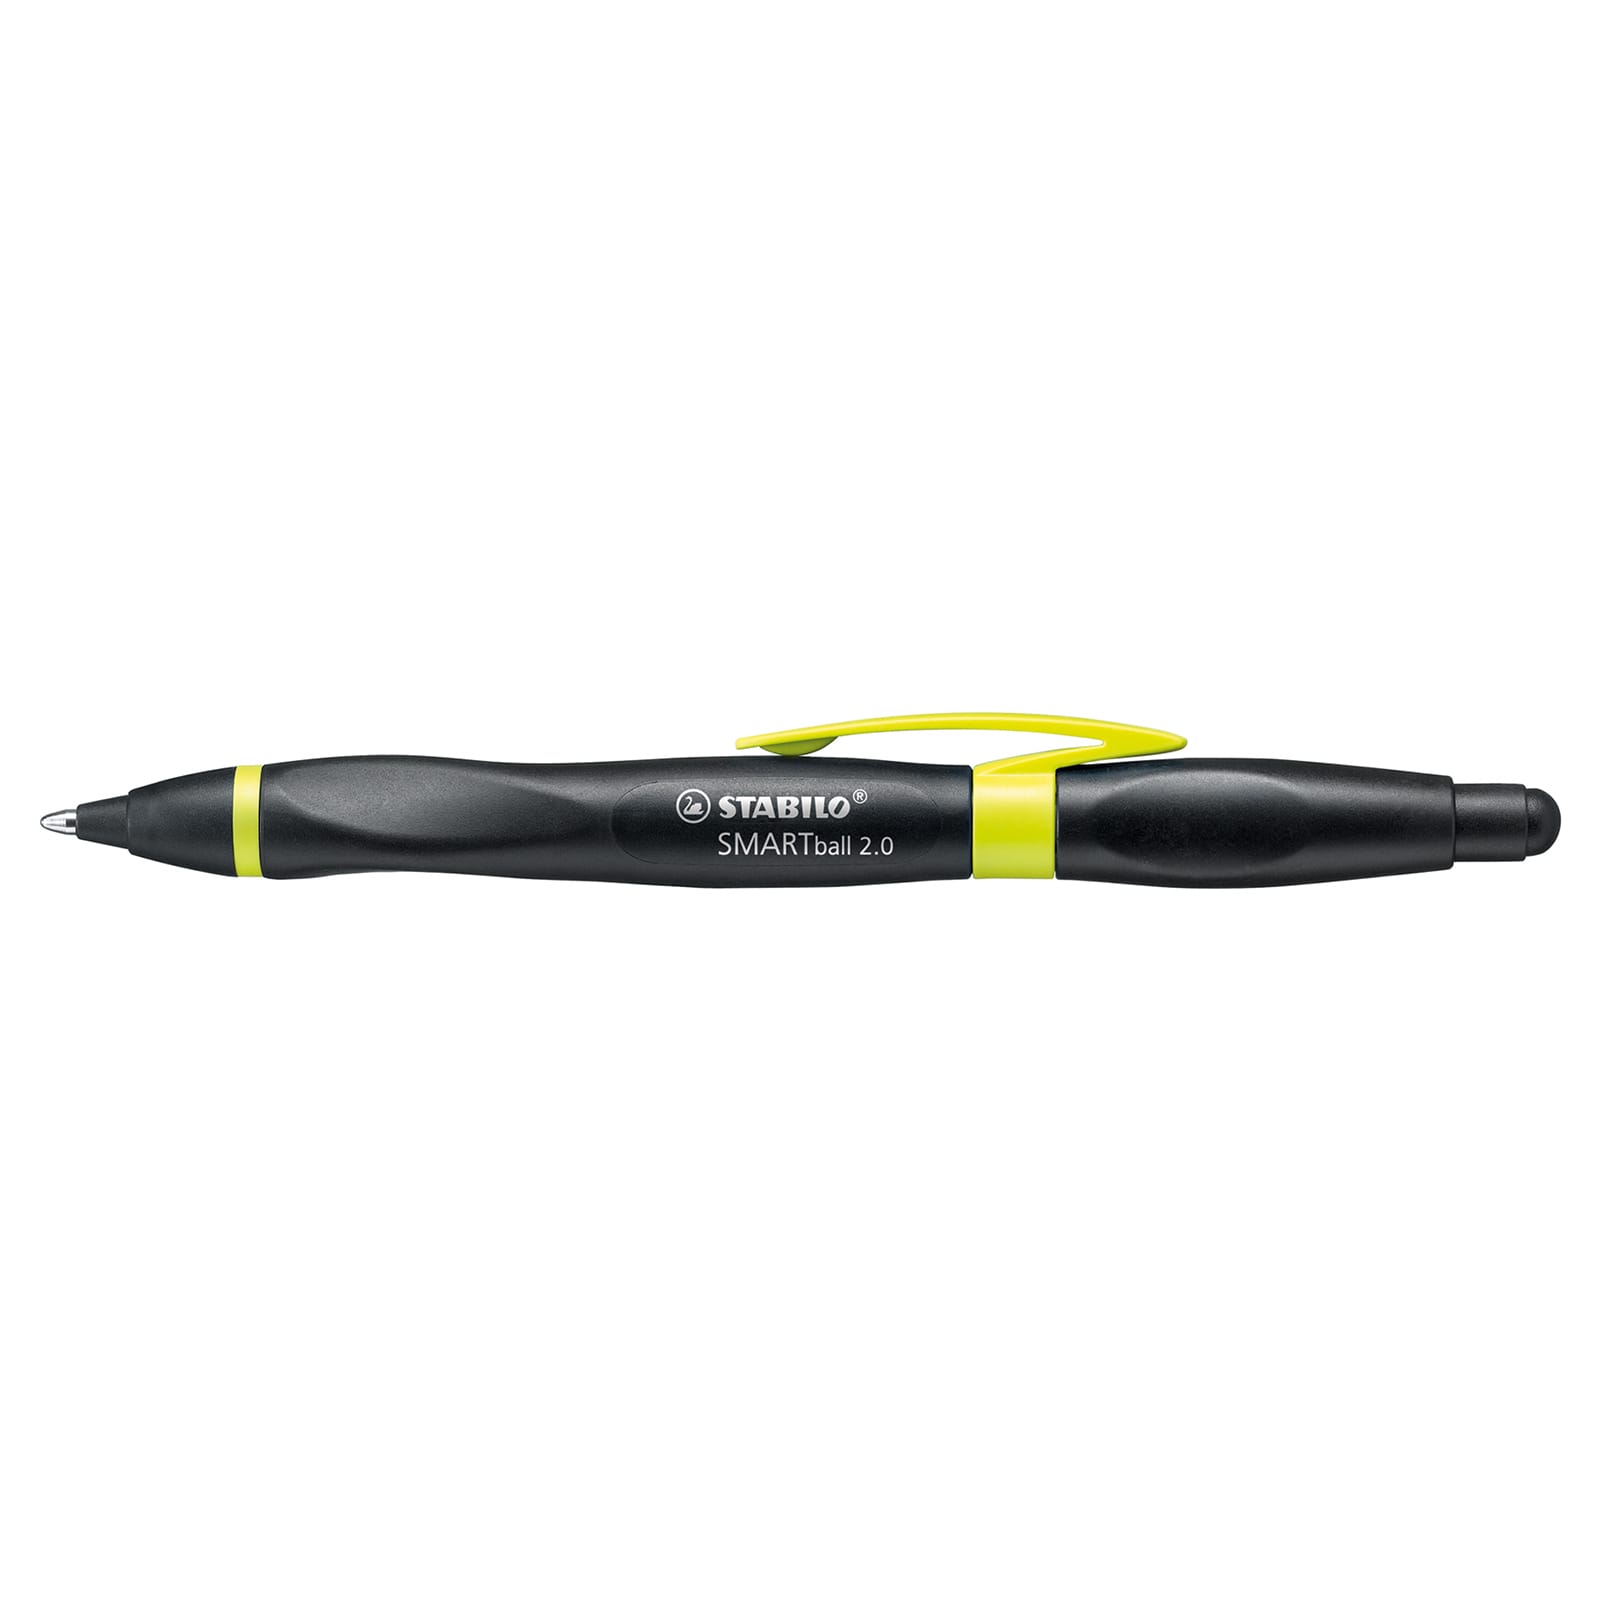 Verschrikkelijk Gietvorm auditie Stabilo® SMARTball 2.0 Pens, Right Handed | Michaels